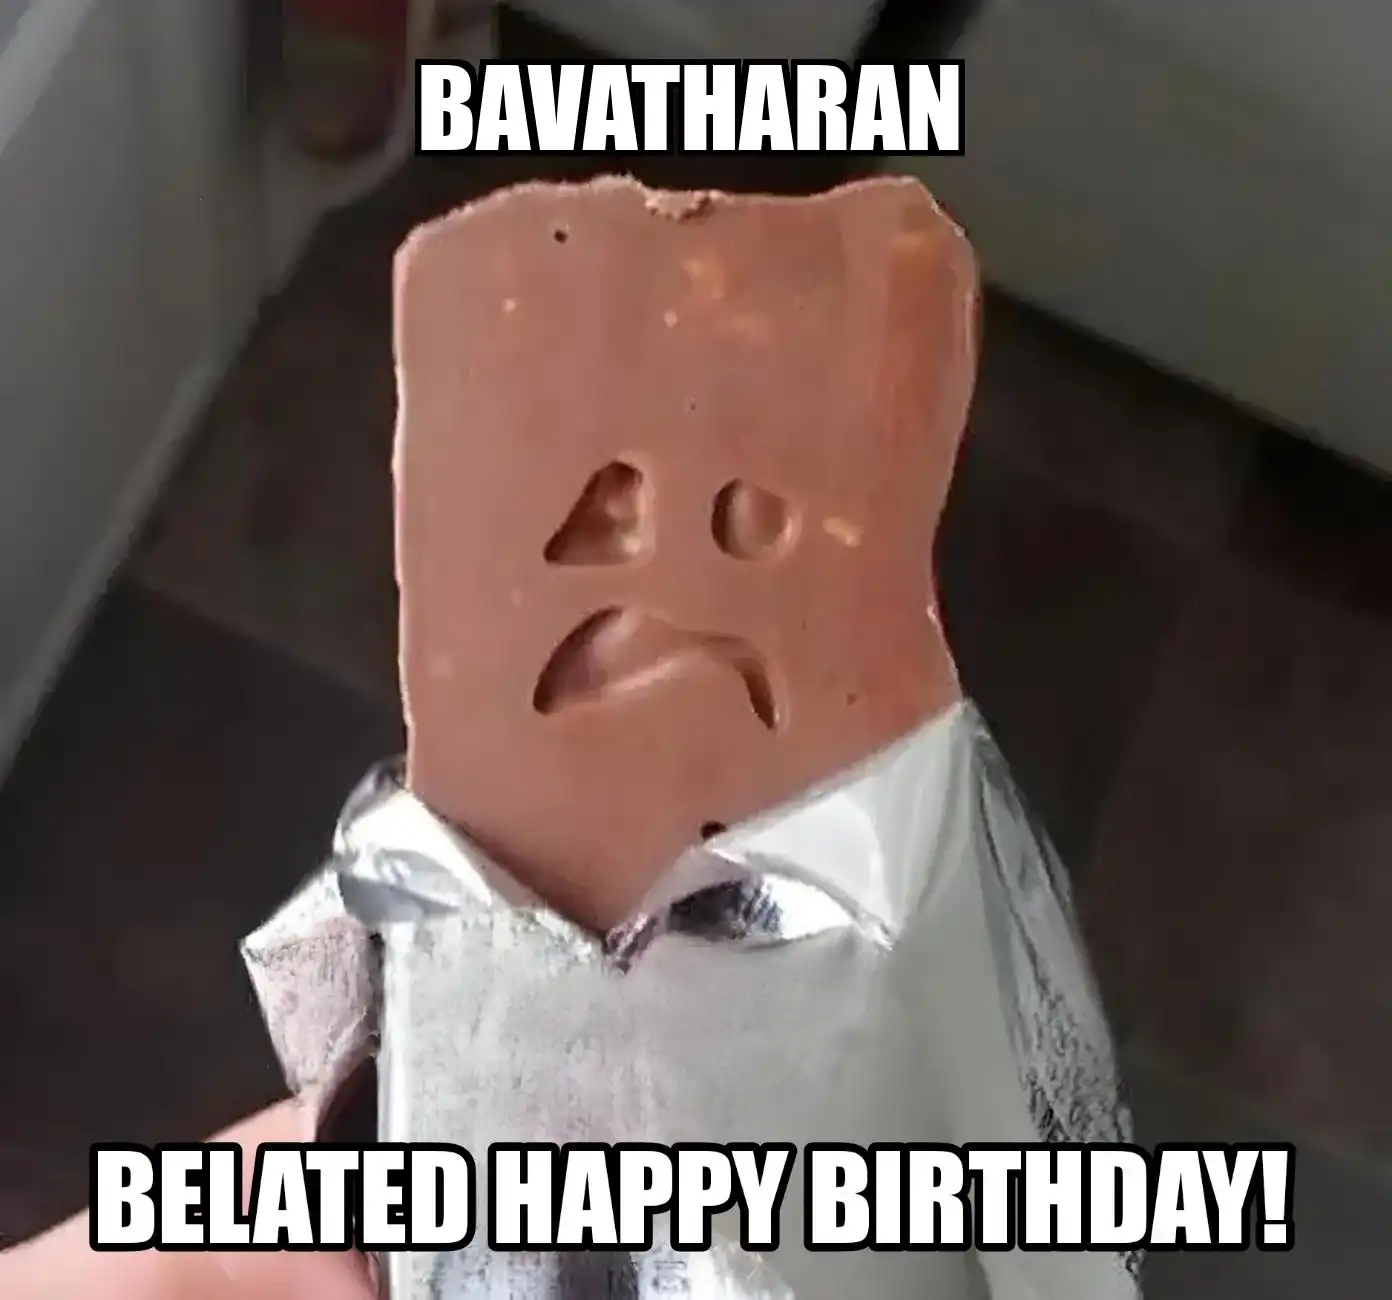 Happy Birthday Bavatharan Belated Happy Birthday Meme